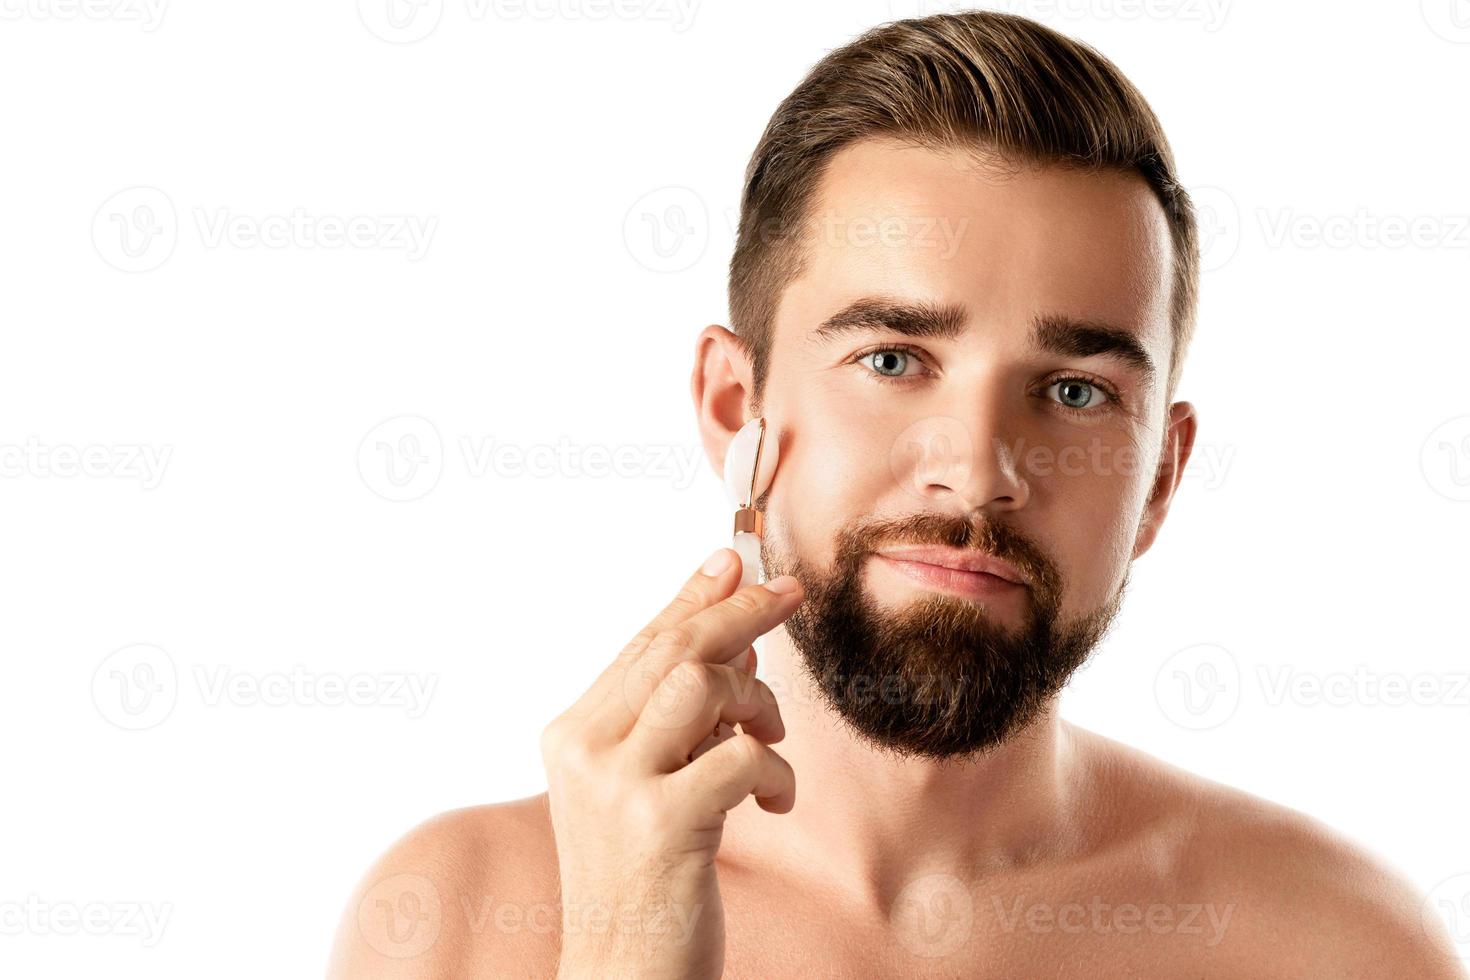 jeune bel homme utilise un rouleau facial pour un massage facial photo